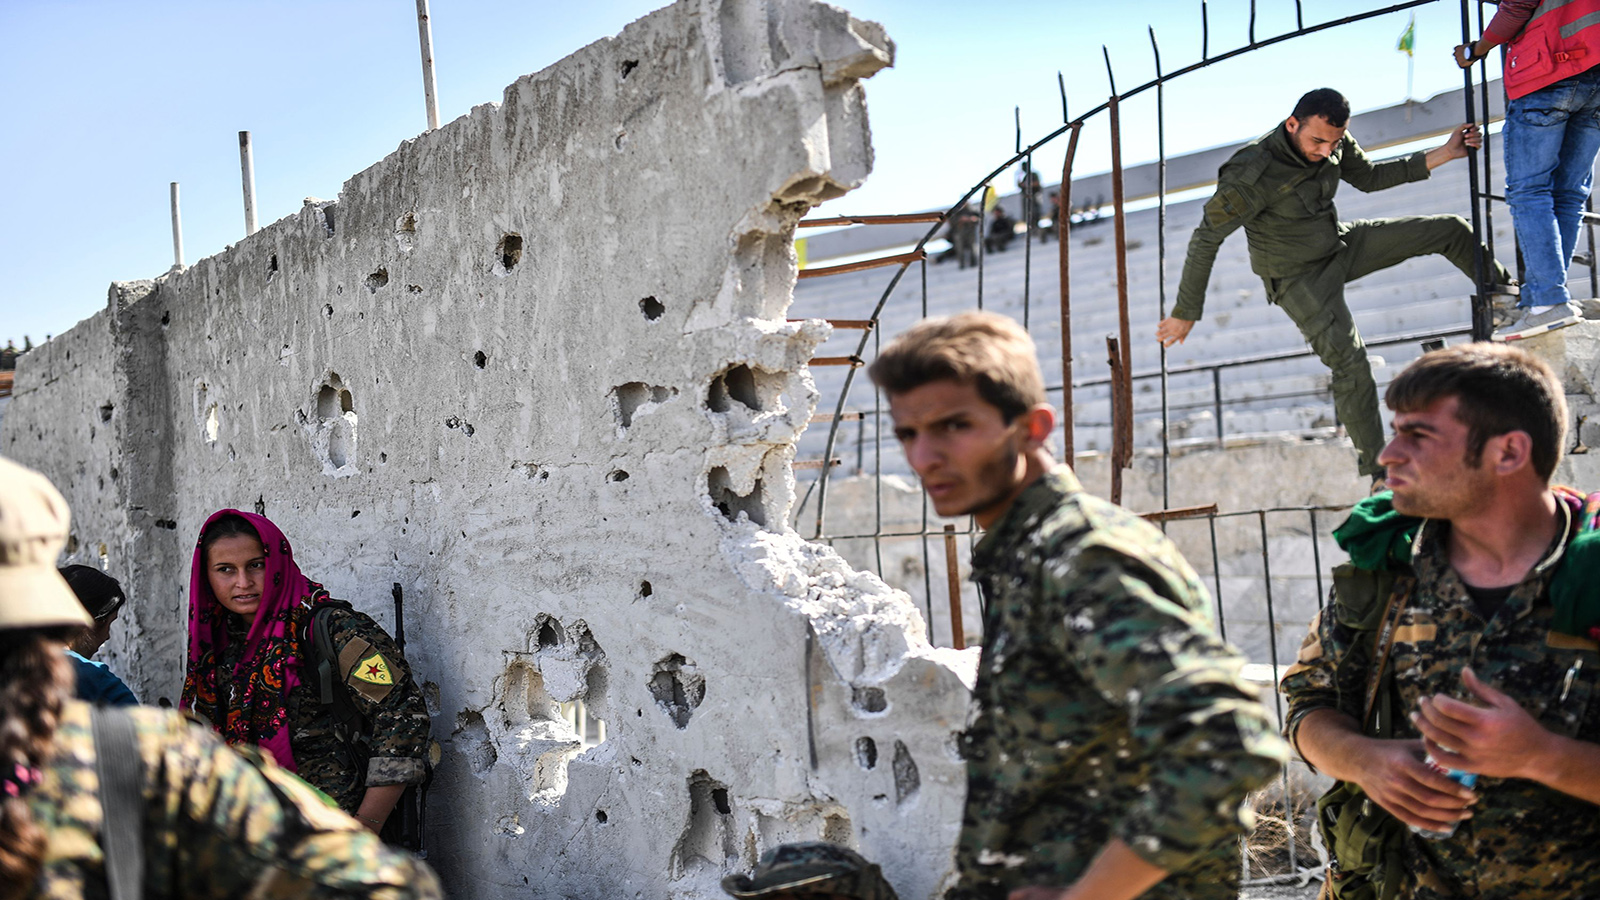 "حرس الحدود" الكردي.. لحماية حضور "الاتحاد الديموقراطي" في سوتشي؟